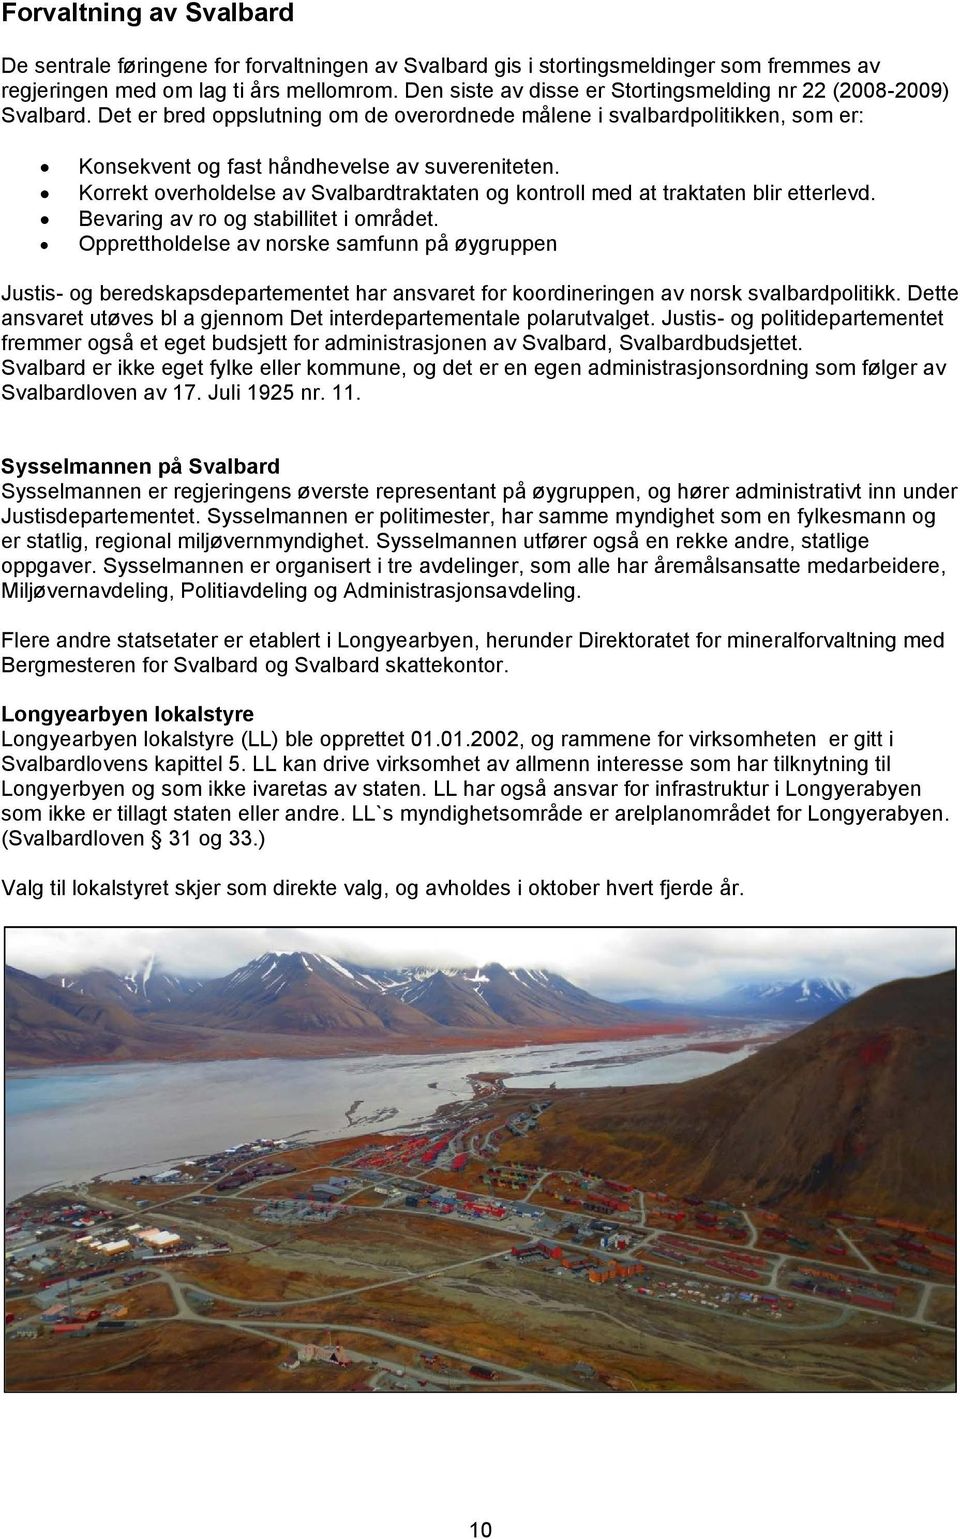 Korrekt overholdelse av Svalbardtraktaten og kontroll med at traktaten blir etterlevd. Bevaring av ro og stabillitet i området.